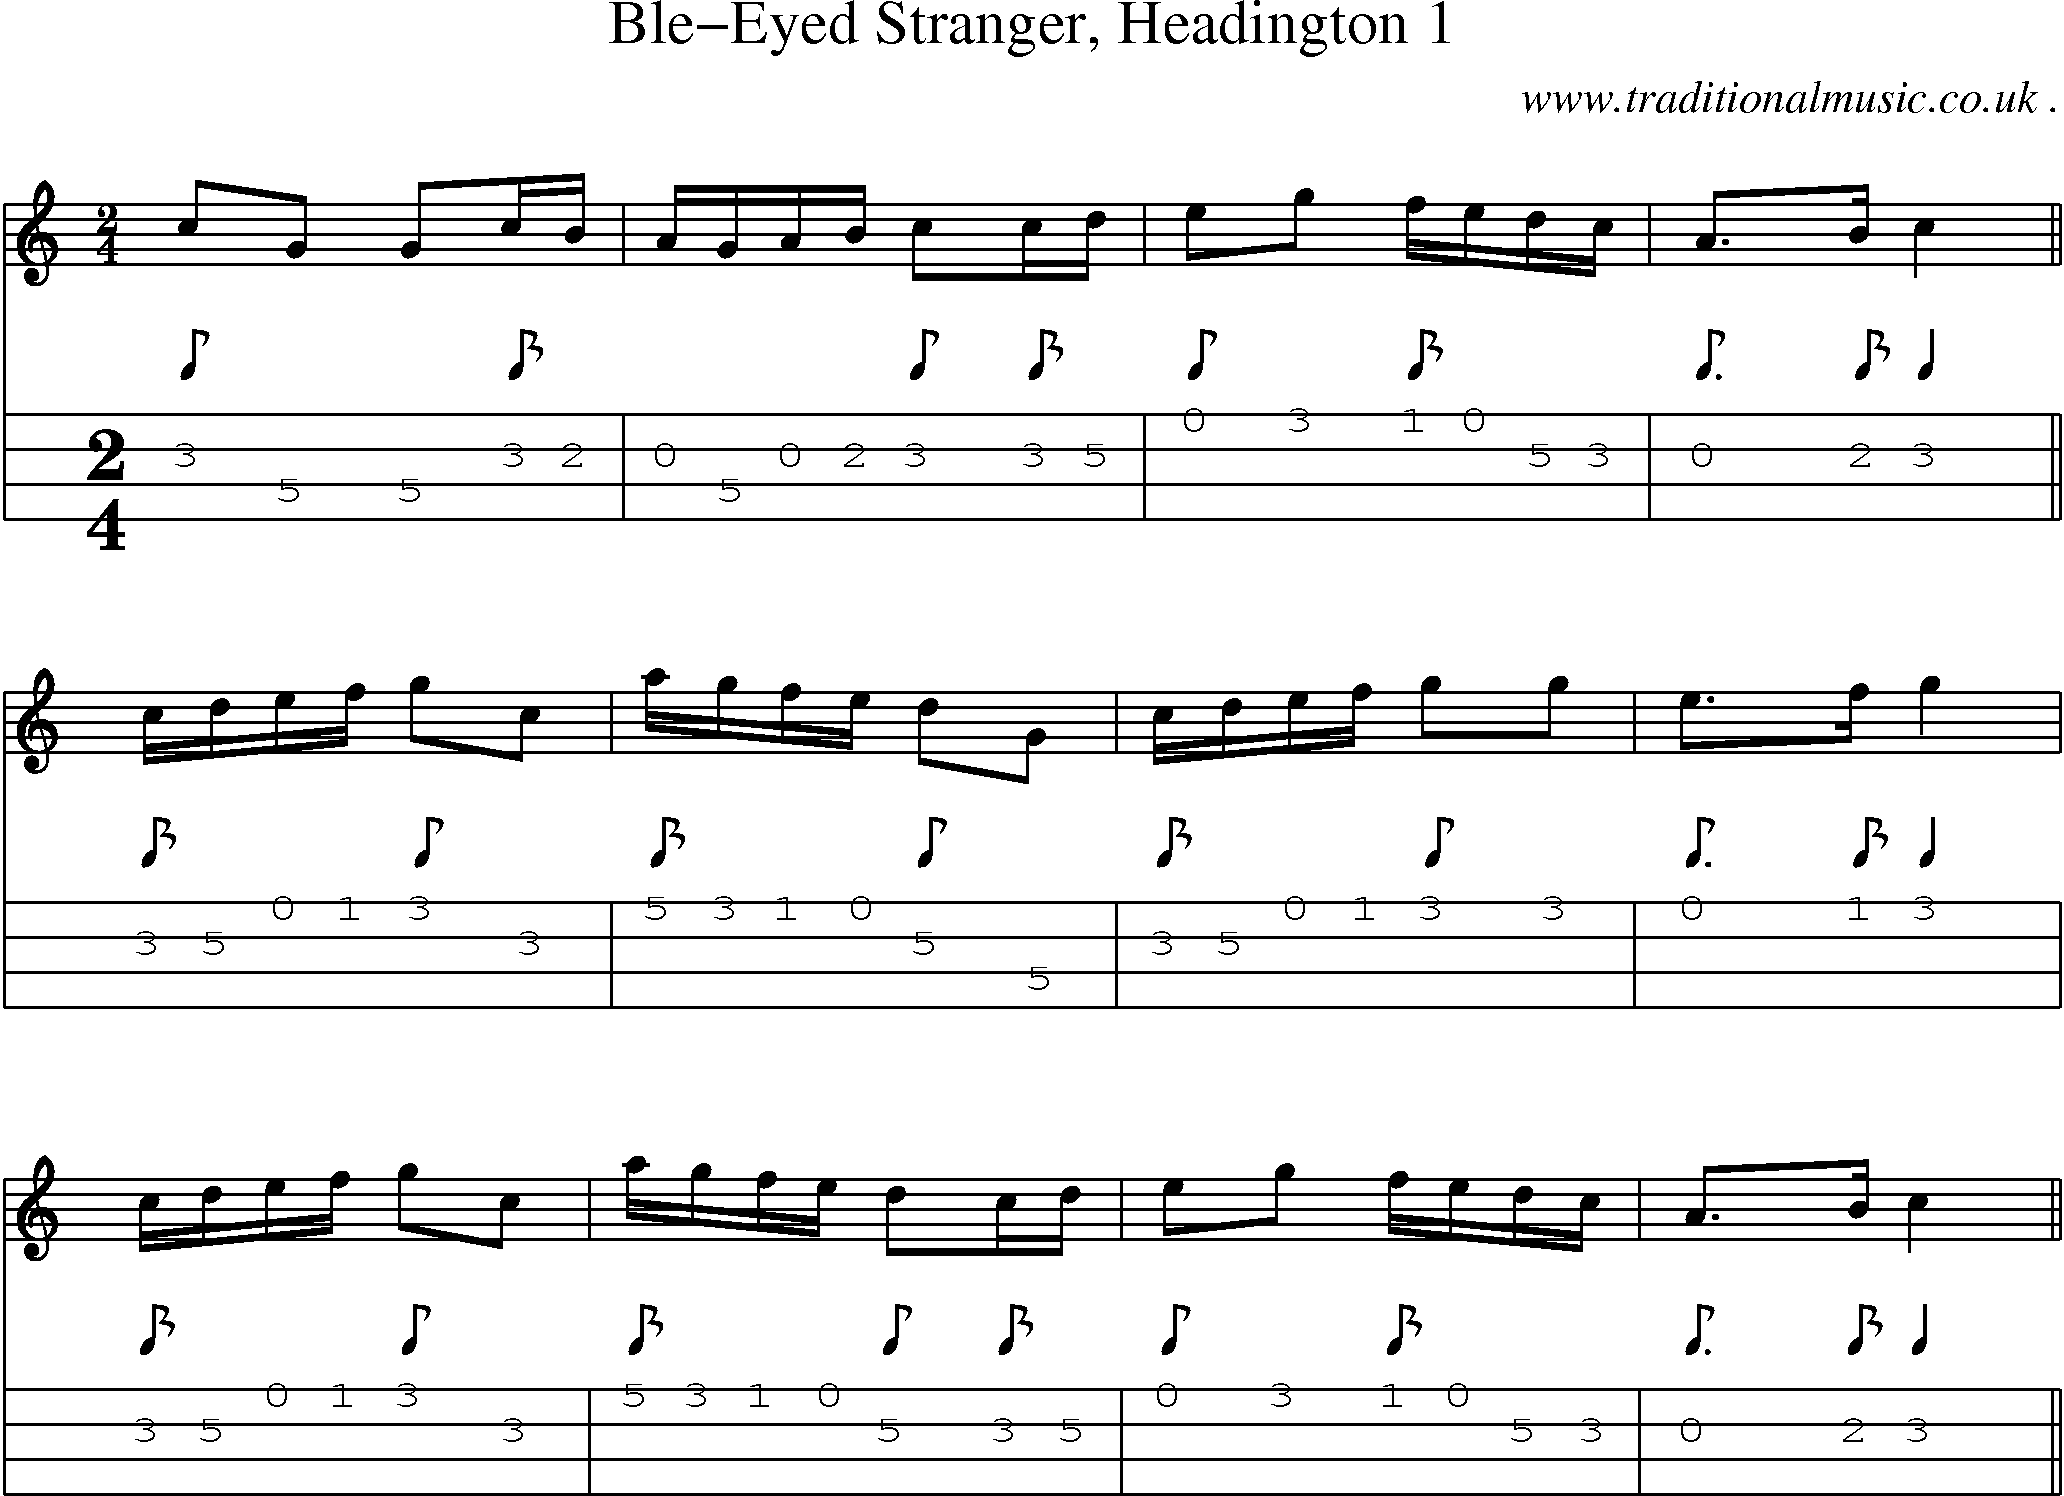 Sheet-Music and Mandolin Tabs for Ble-eyed Stranger Headington 1